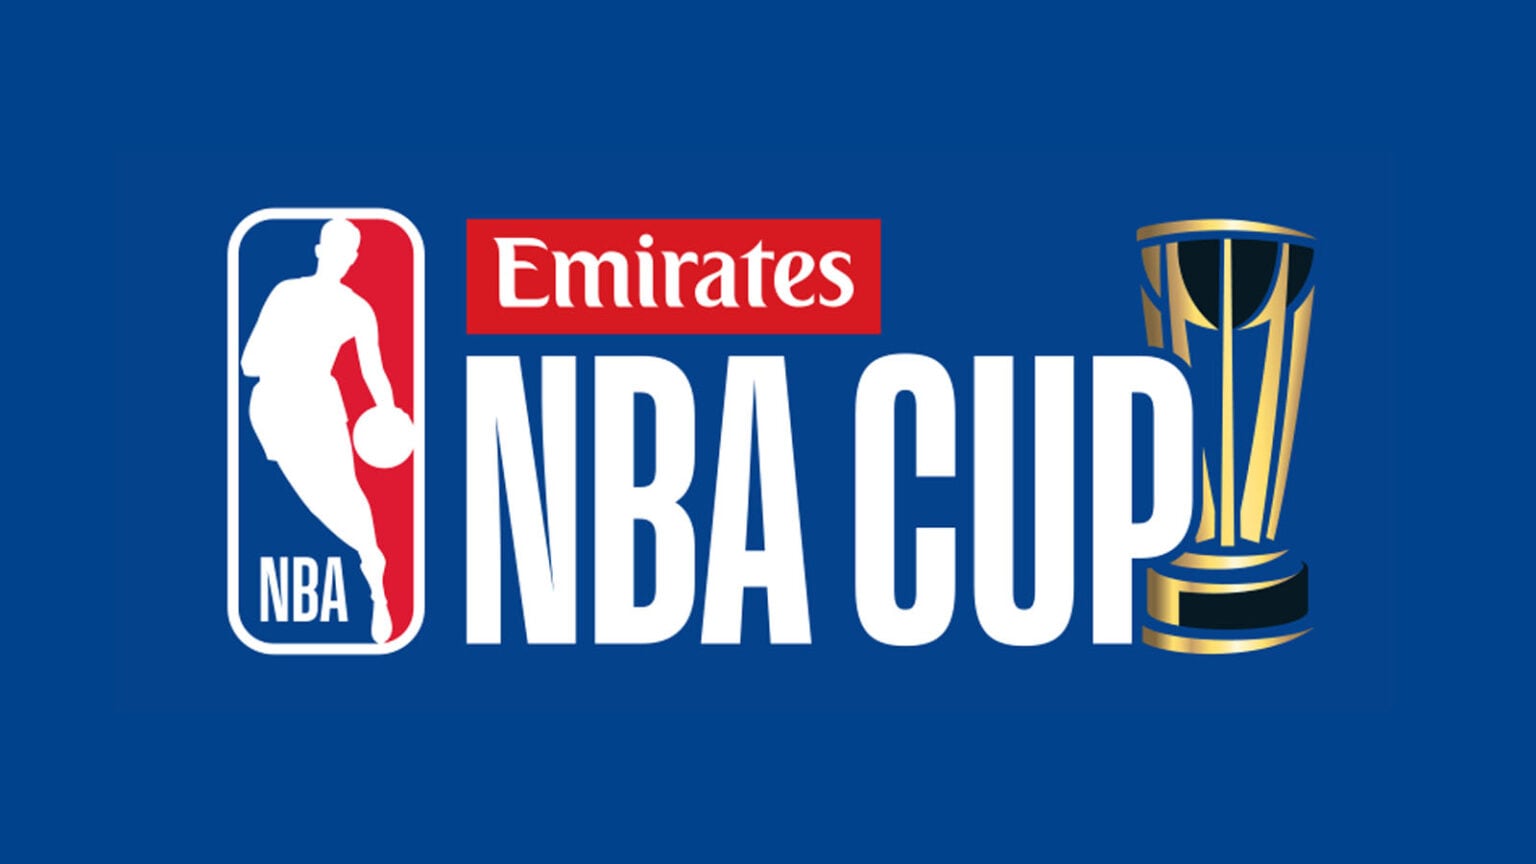 NBAがシーズン中のトーナメント「エミレーツ NBAカップ」のロゴと概要を発表